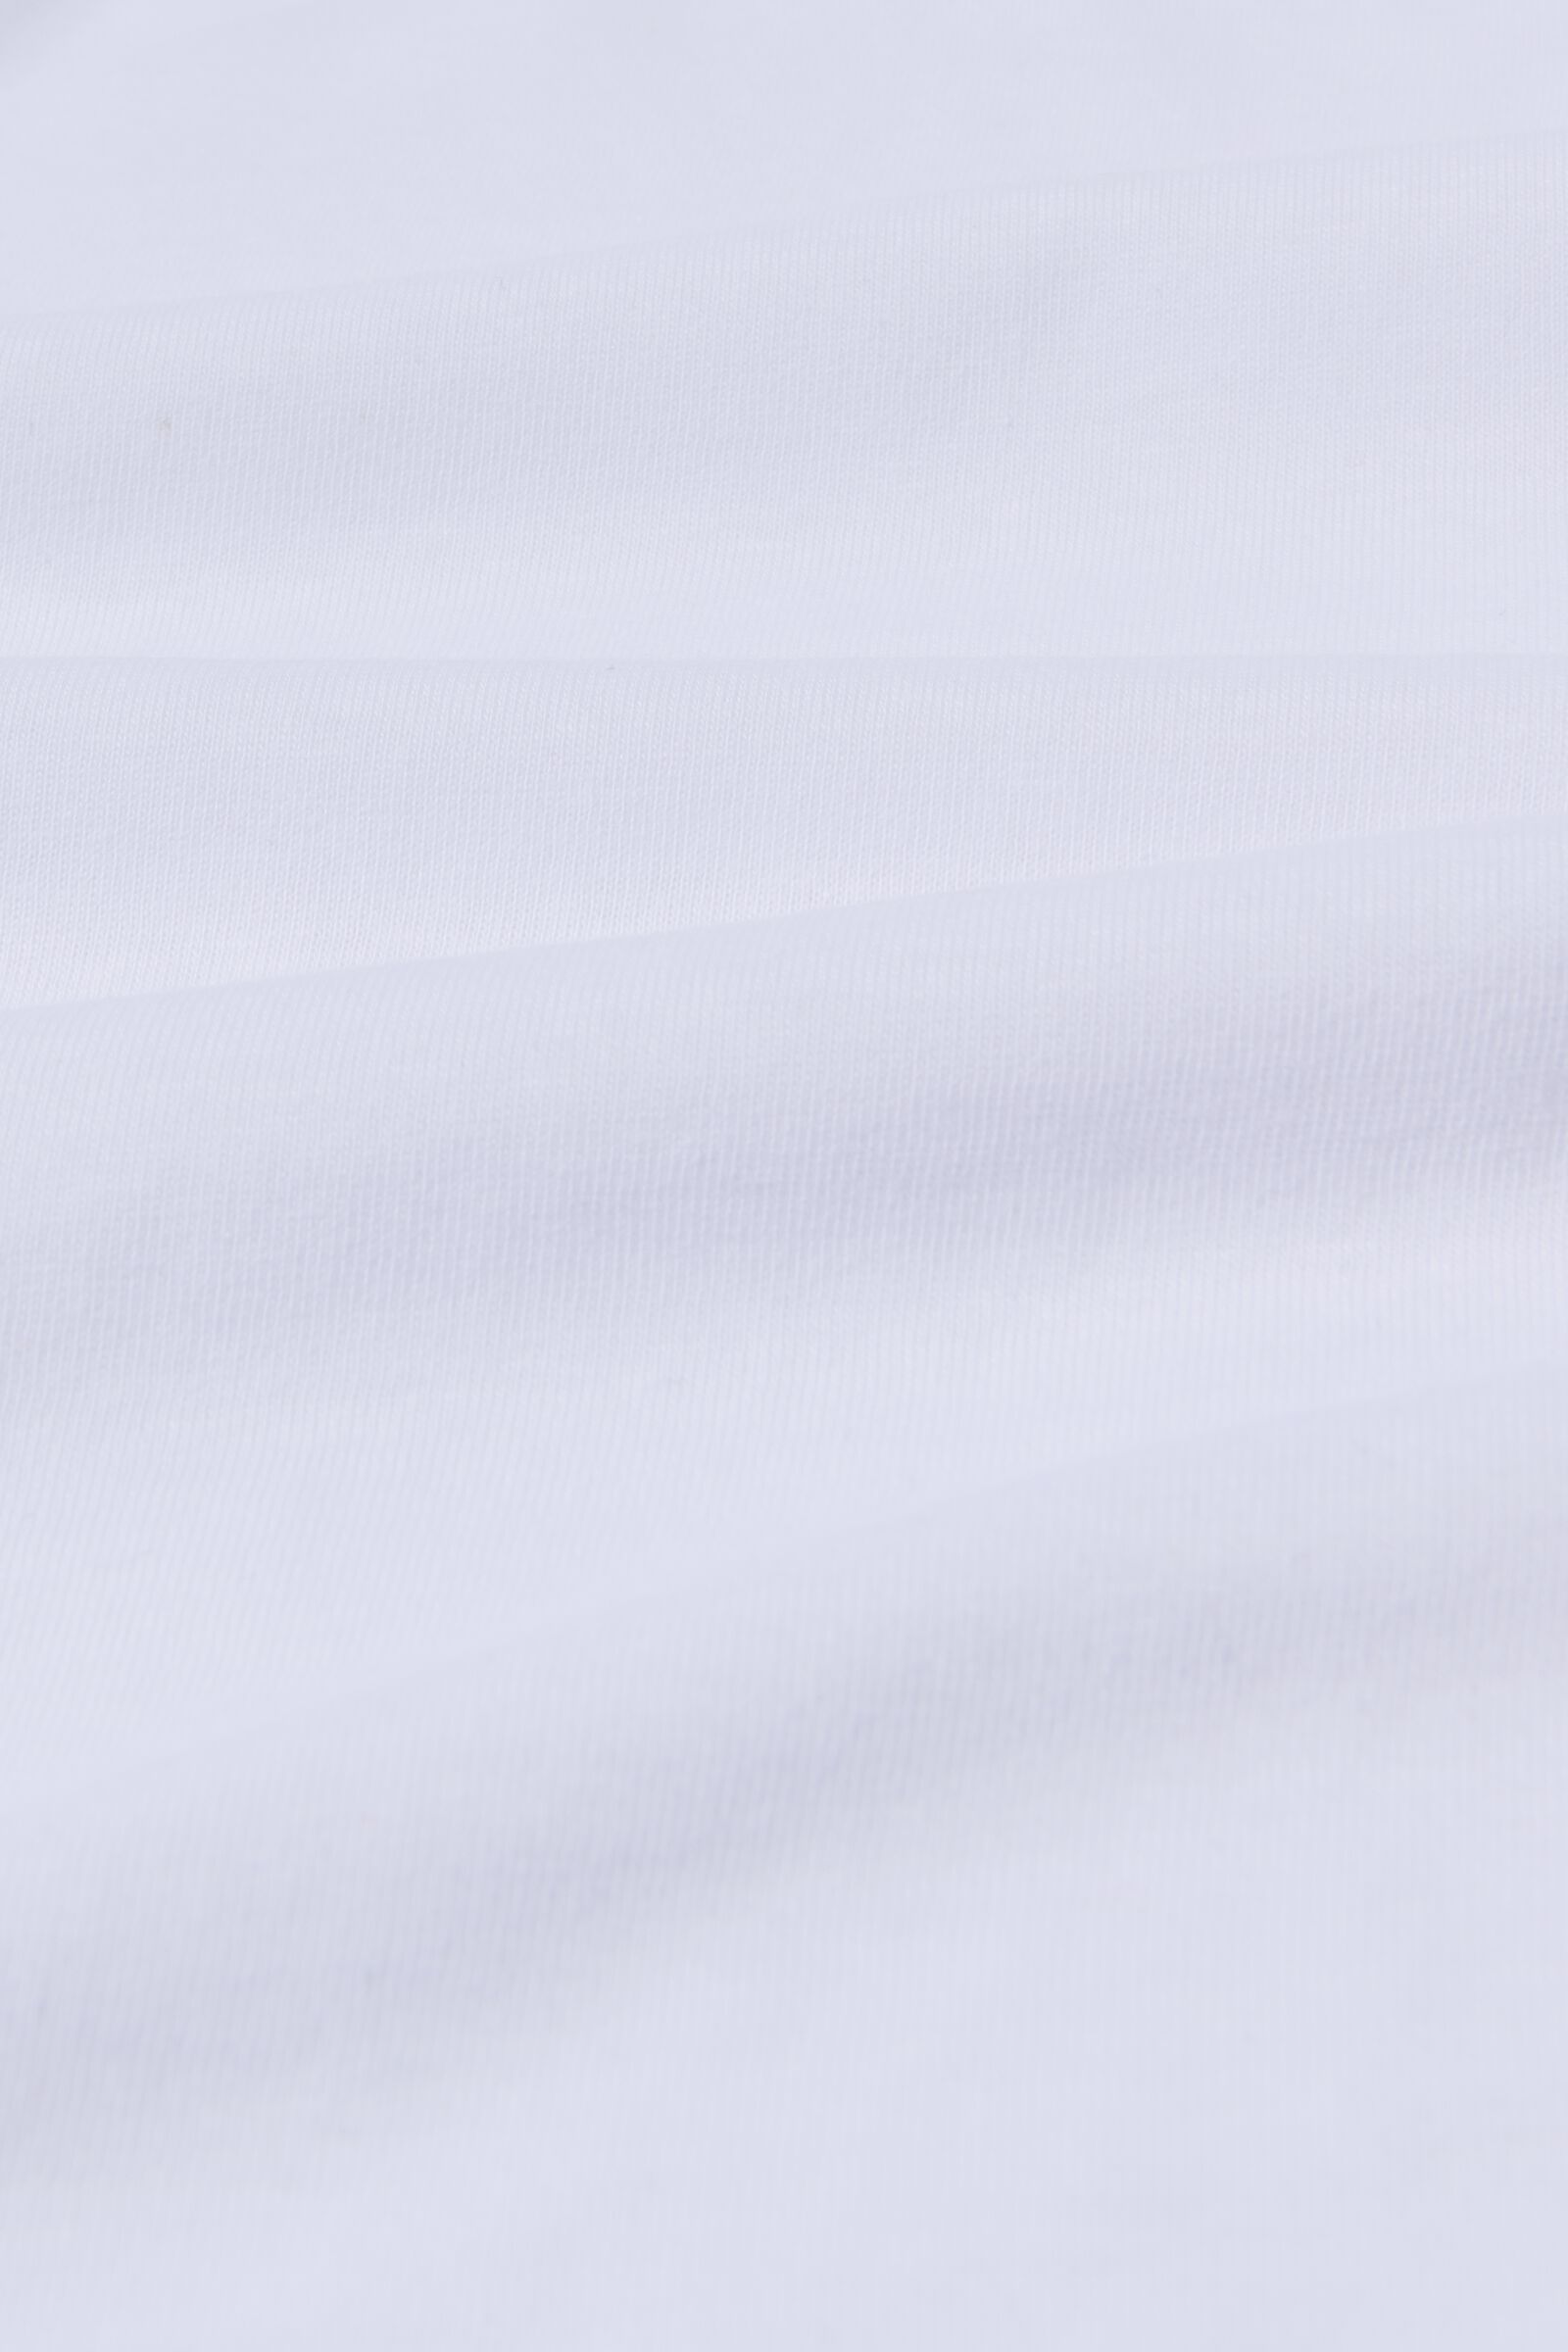 Topper-Spannbettlaken, Soft Cotton, 180 x 220 cm, weiß - 5190131 - HEMA